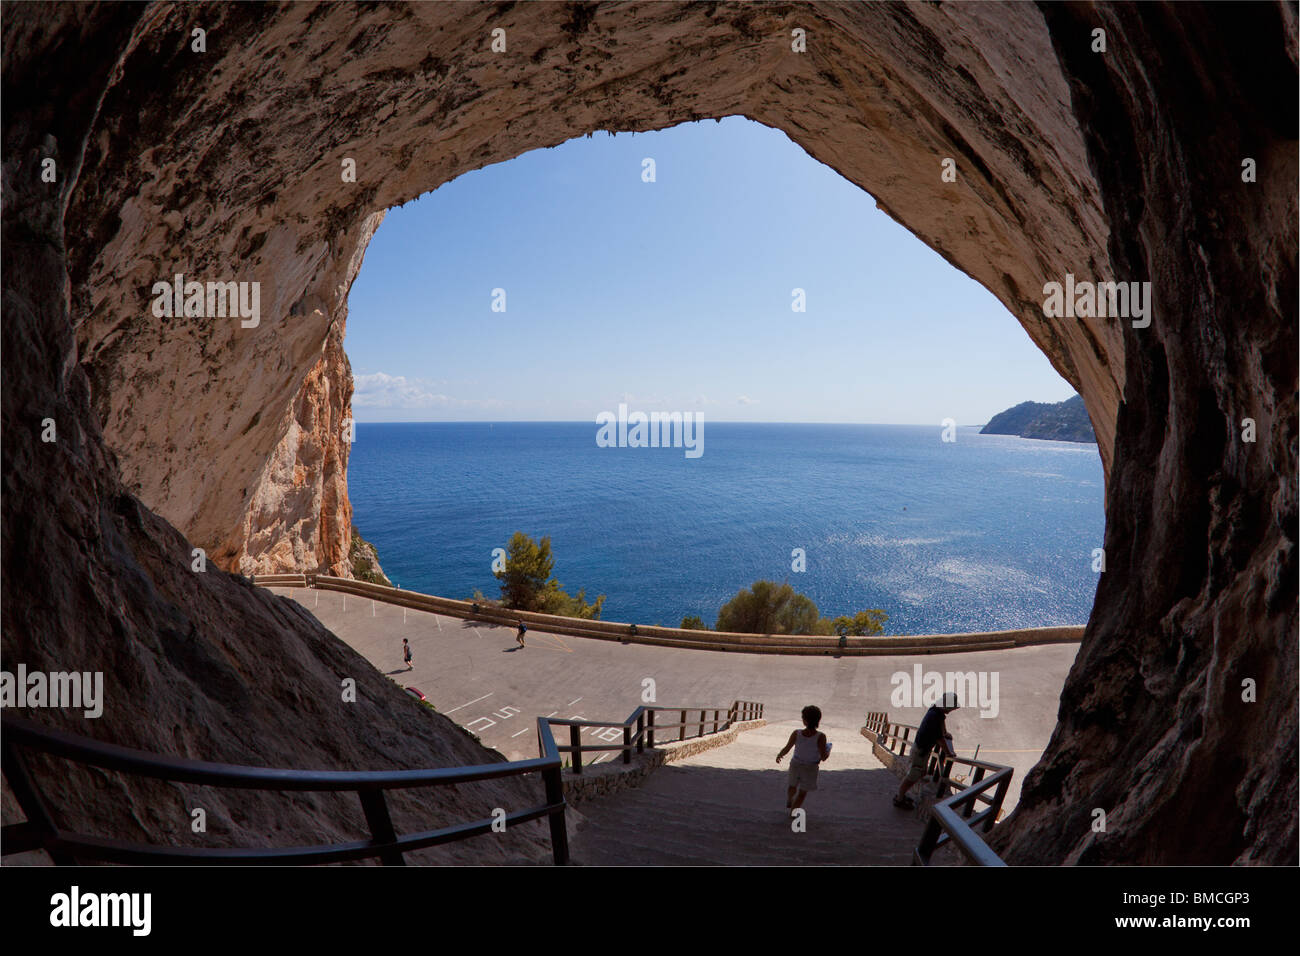 Entrée des grottes d'Arta, Majorque Canyamel Majorque Espagne Europe EU Banque D'Images